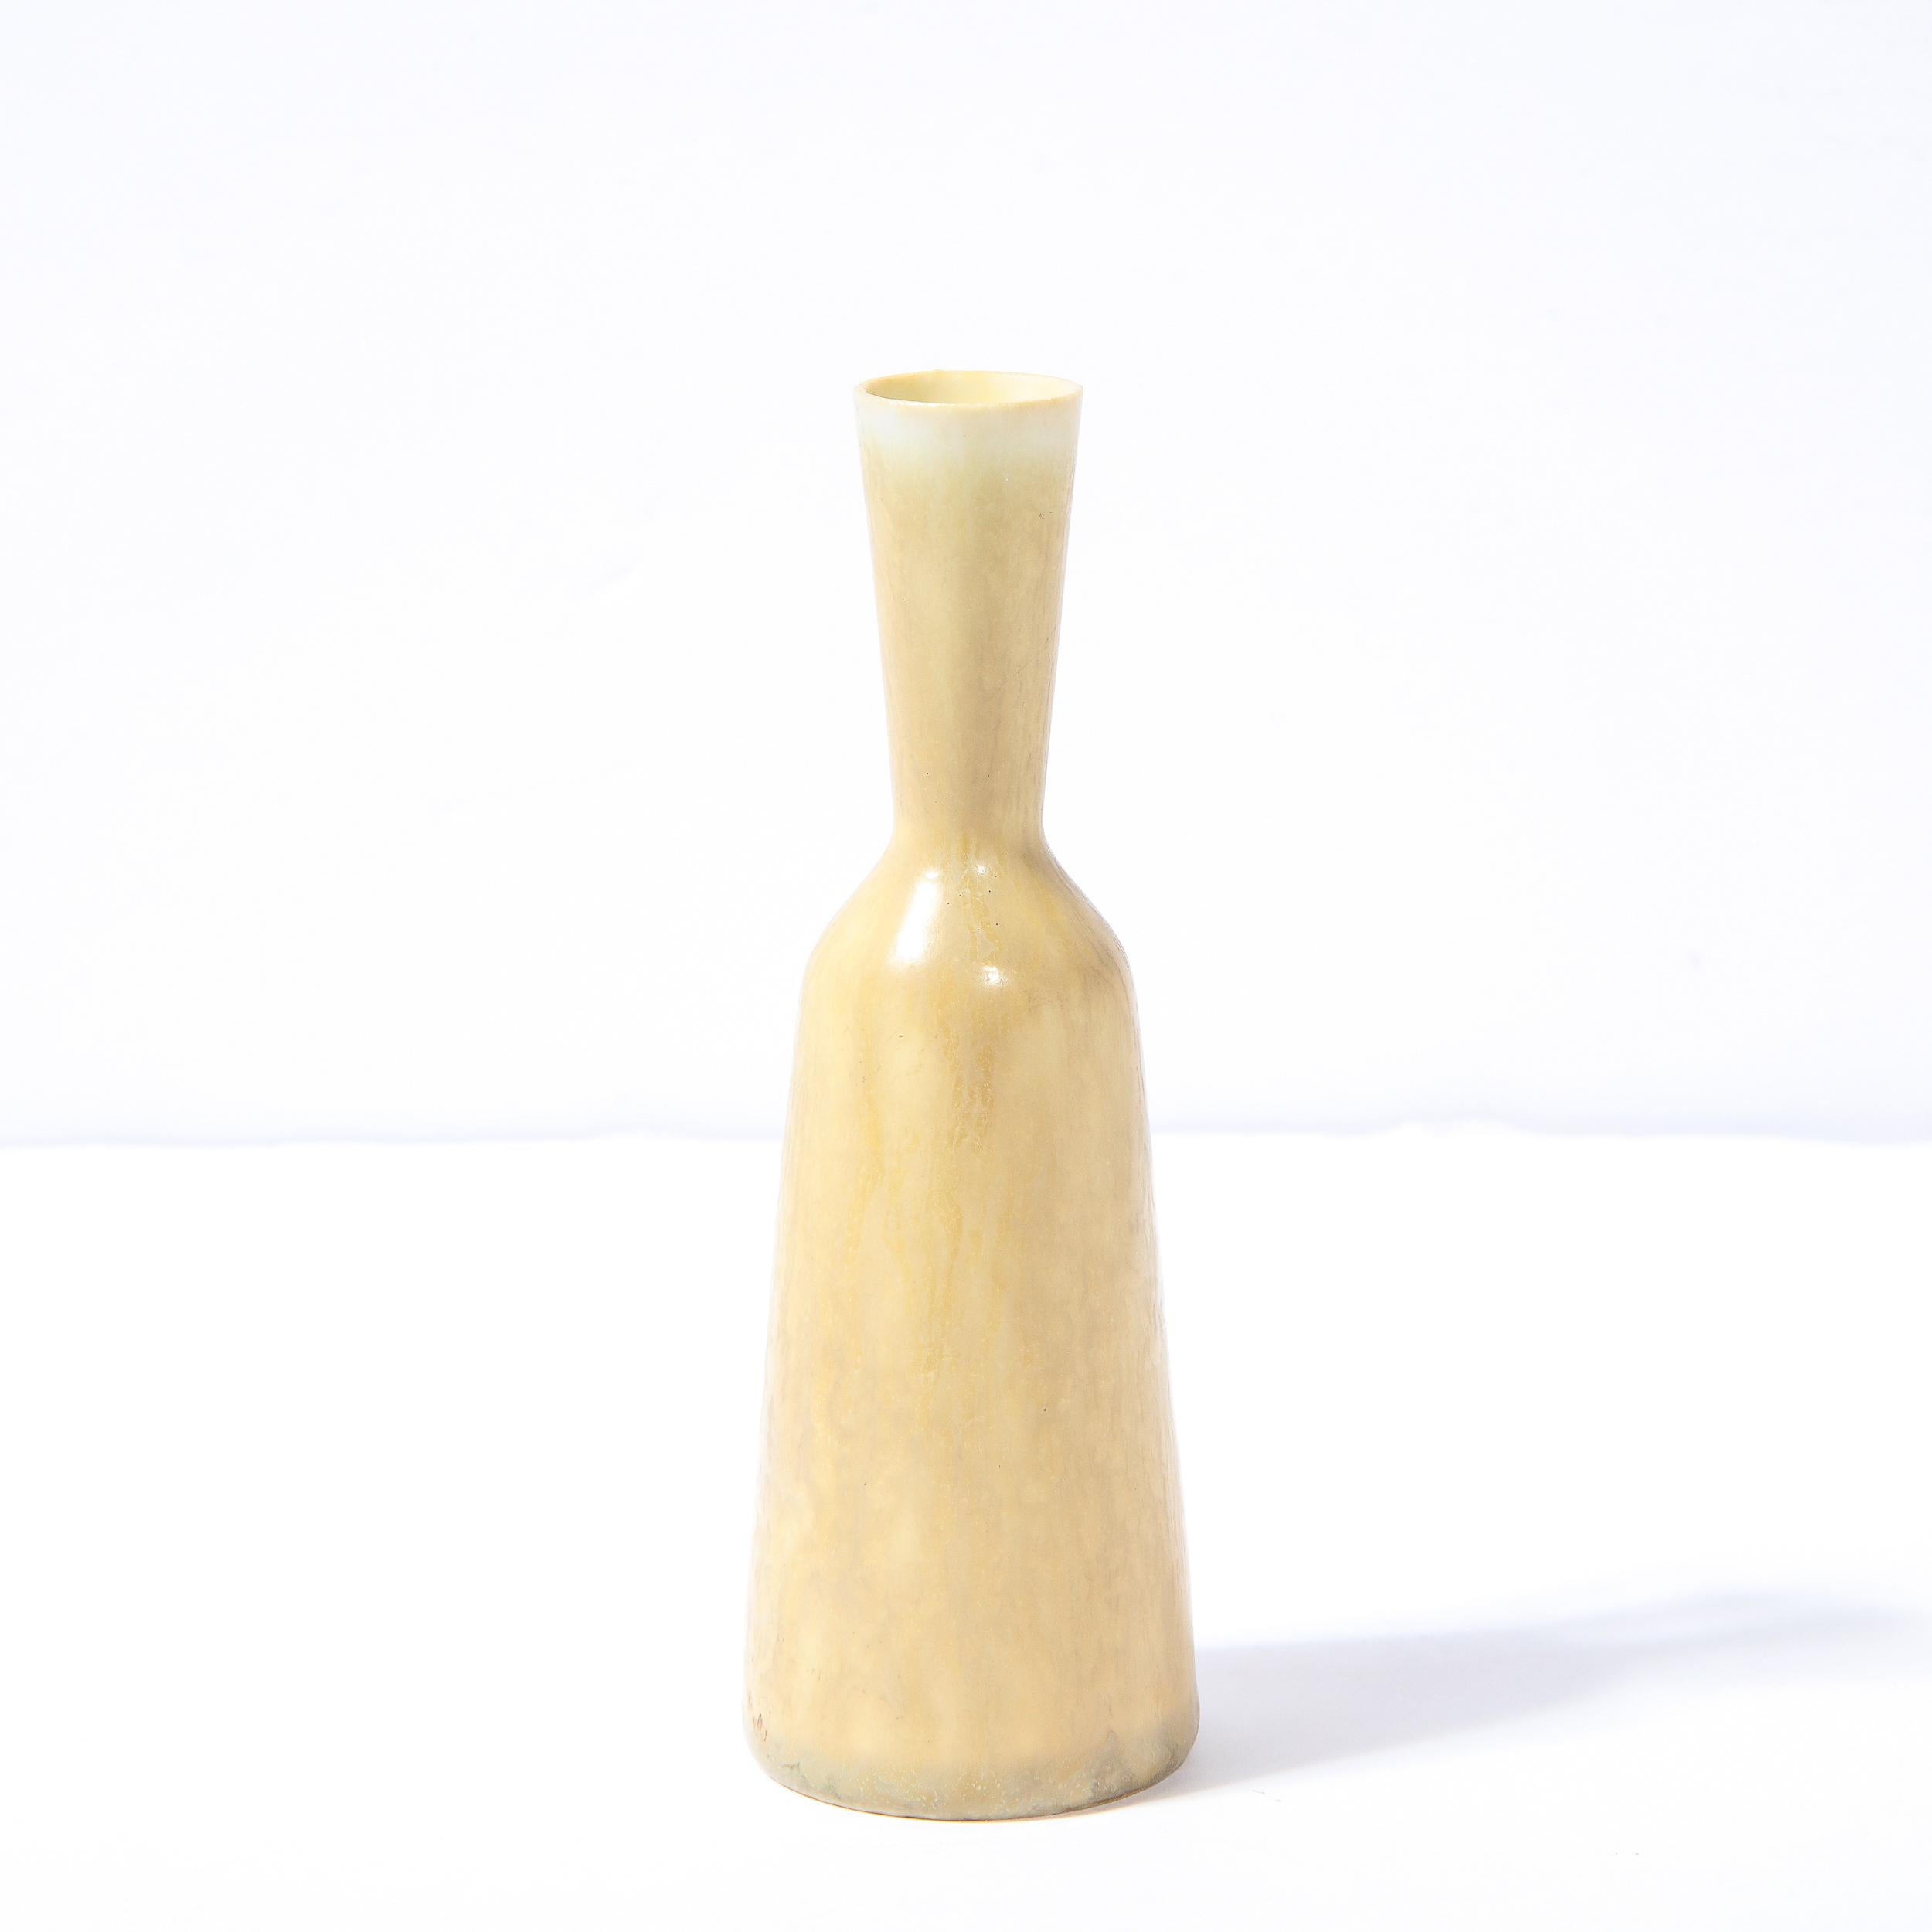 Diese elegante Vase der Jahrhundertmitte wurde um 1960 von Gunnar Nylund für Rorstrand in Schweden entworfen. Sie hat einen sanduhrförmigen, konisch zulaufenden Körper aus glasierter Keramik in einem raffinierten Sandton mit einem skulpturalen Griff